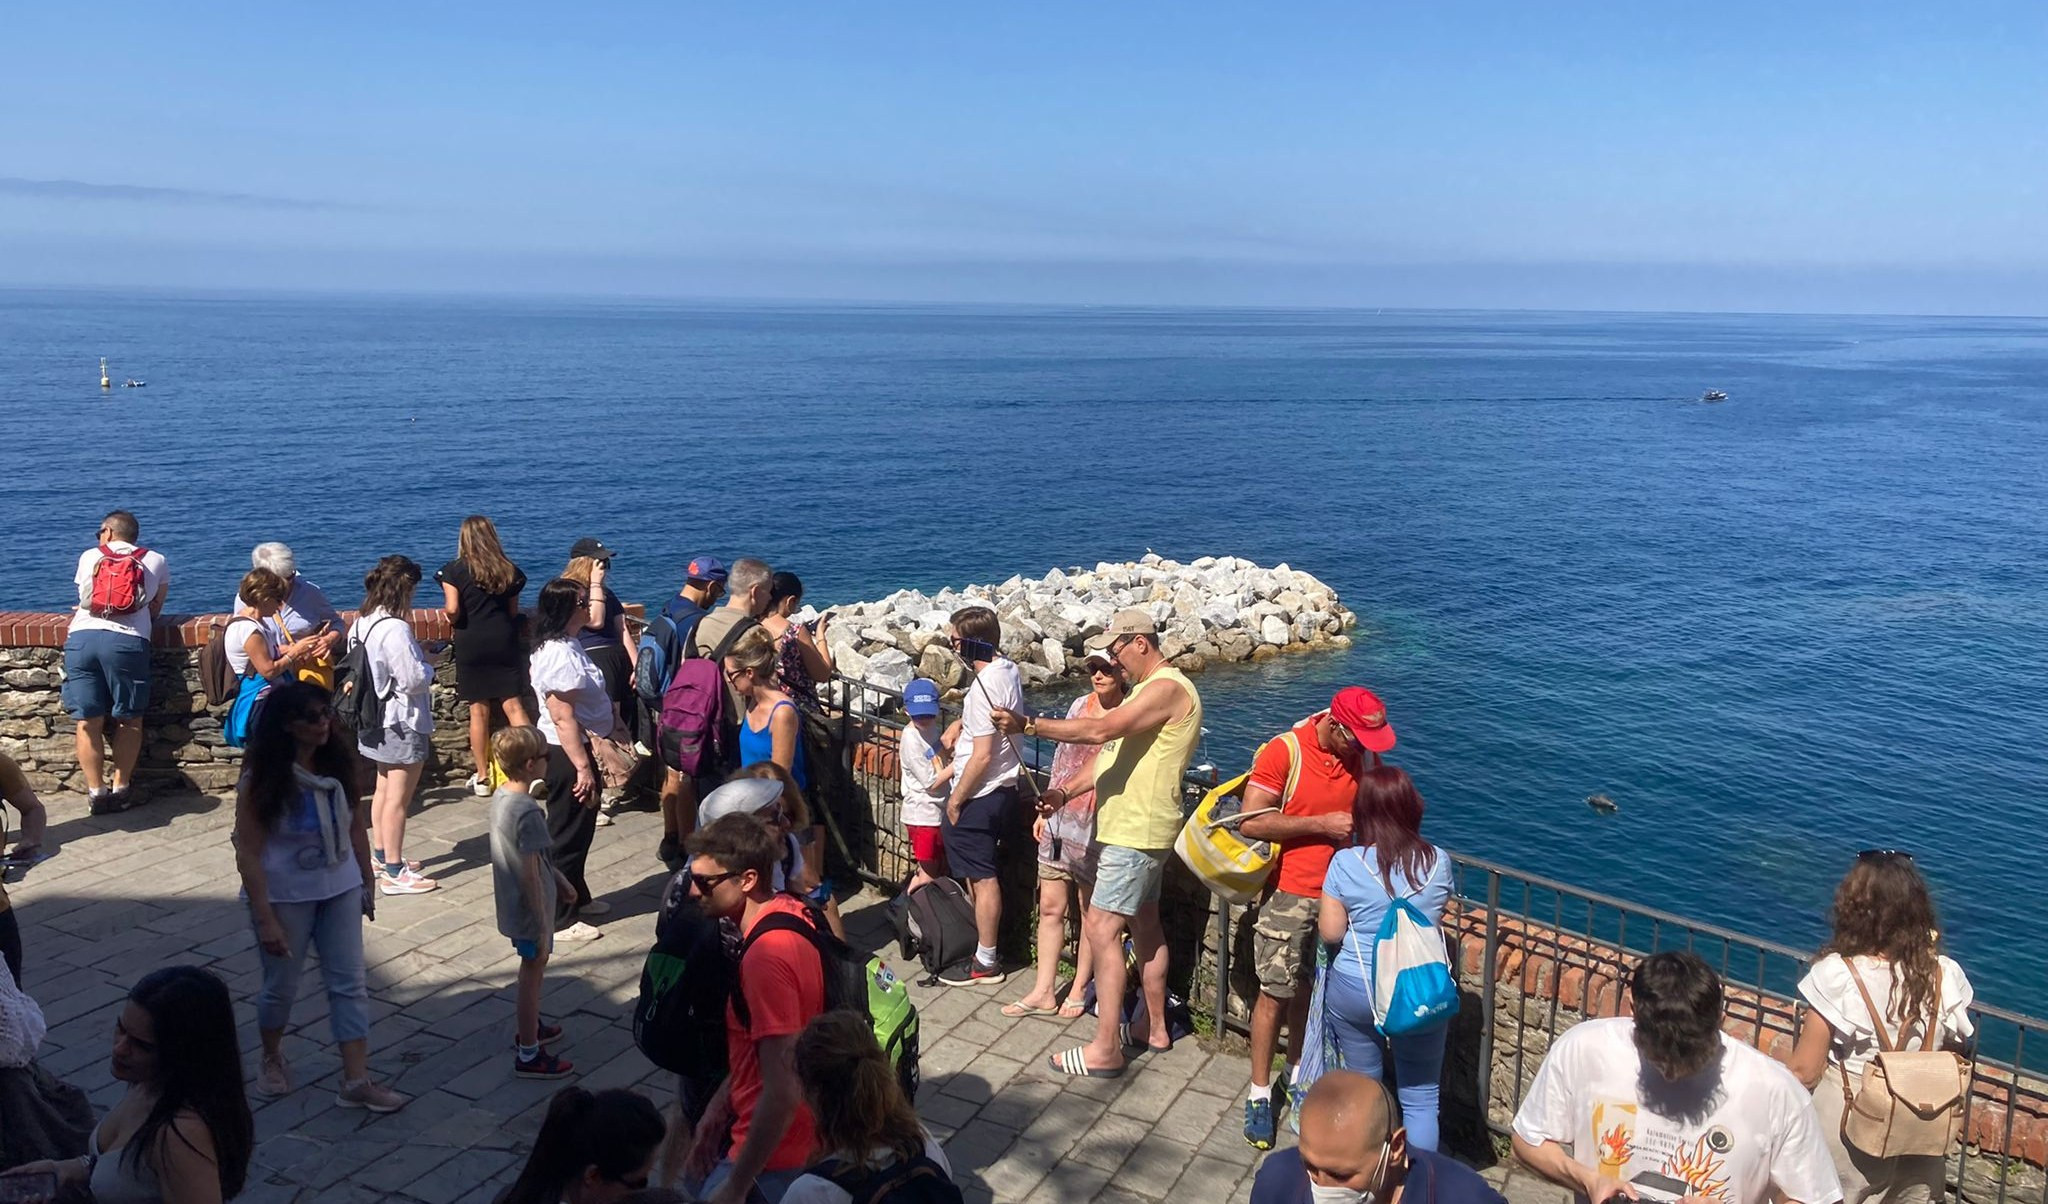 Inchiesta, turisti e limitazioni: la Liguria si divide